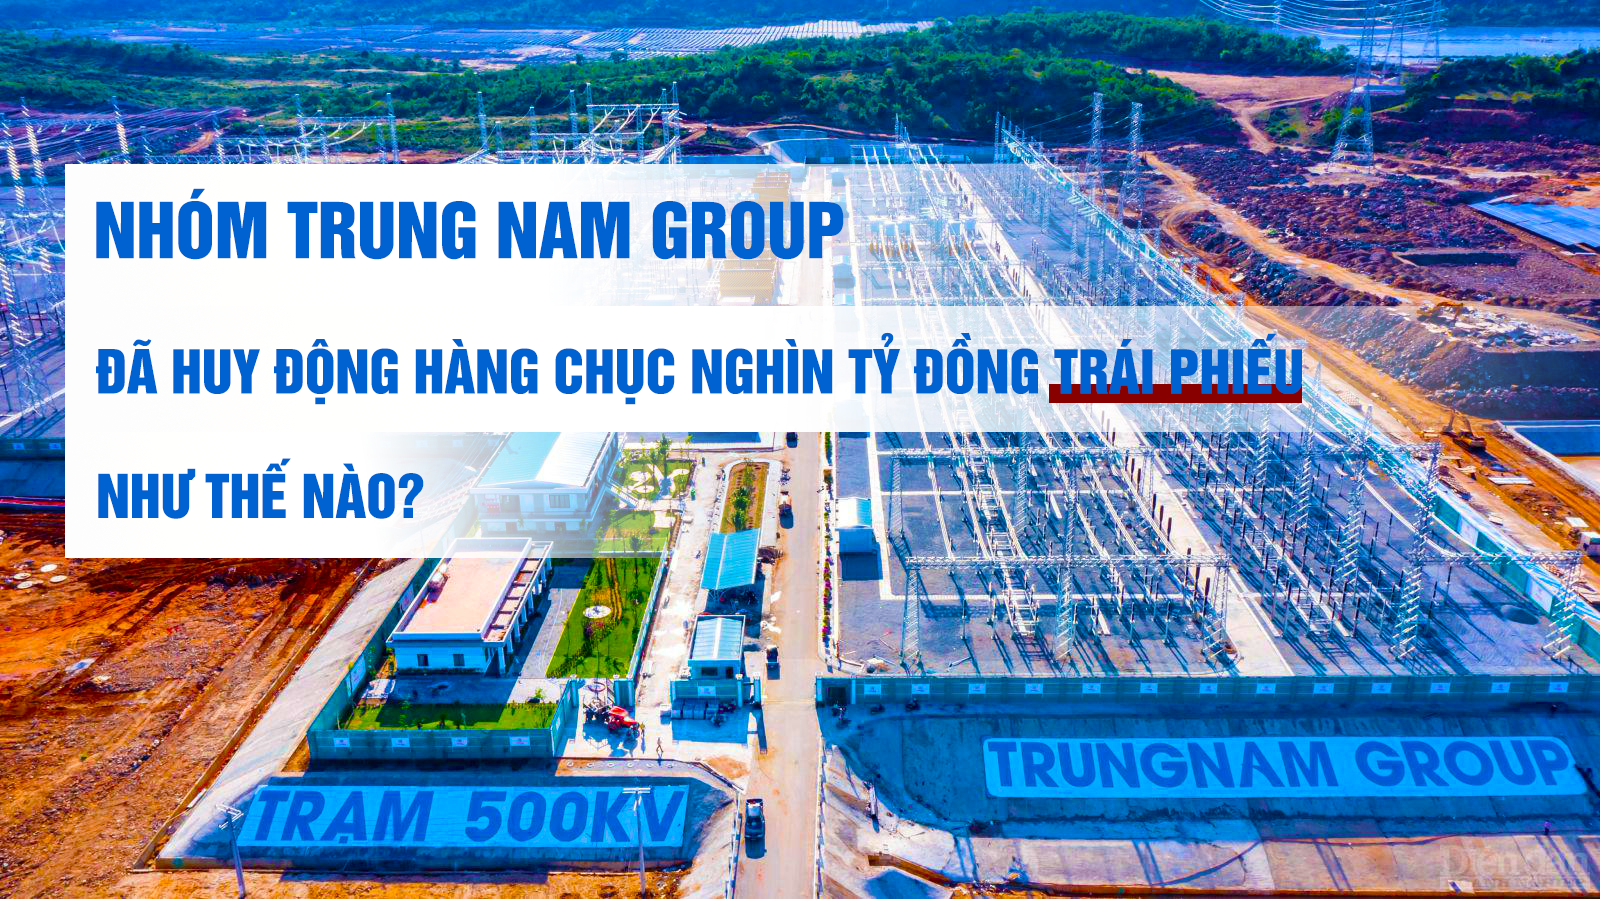 Nhóm Trung Nam Group đã “dồn dập” huy động hàng chục nghìn tỷ đồng trái phiếu như thế nào?